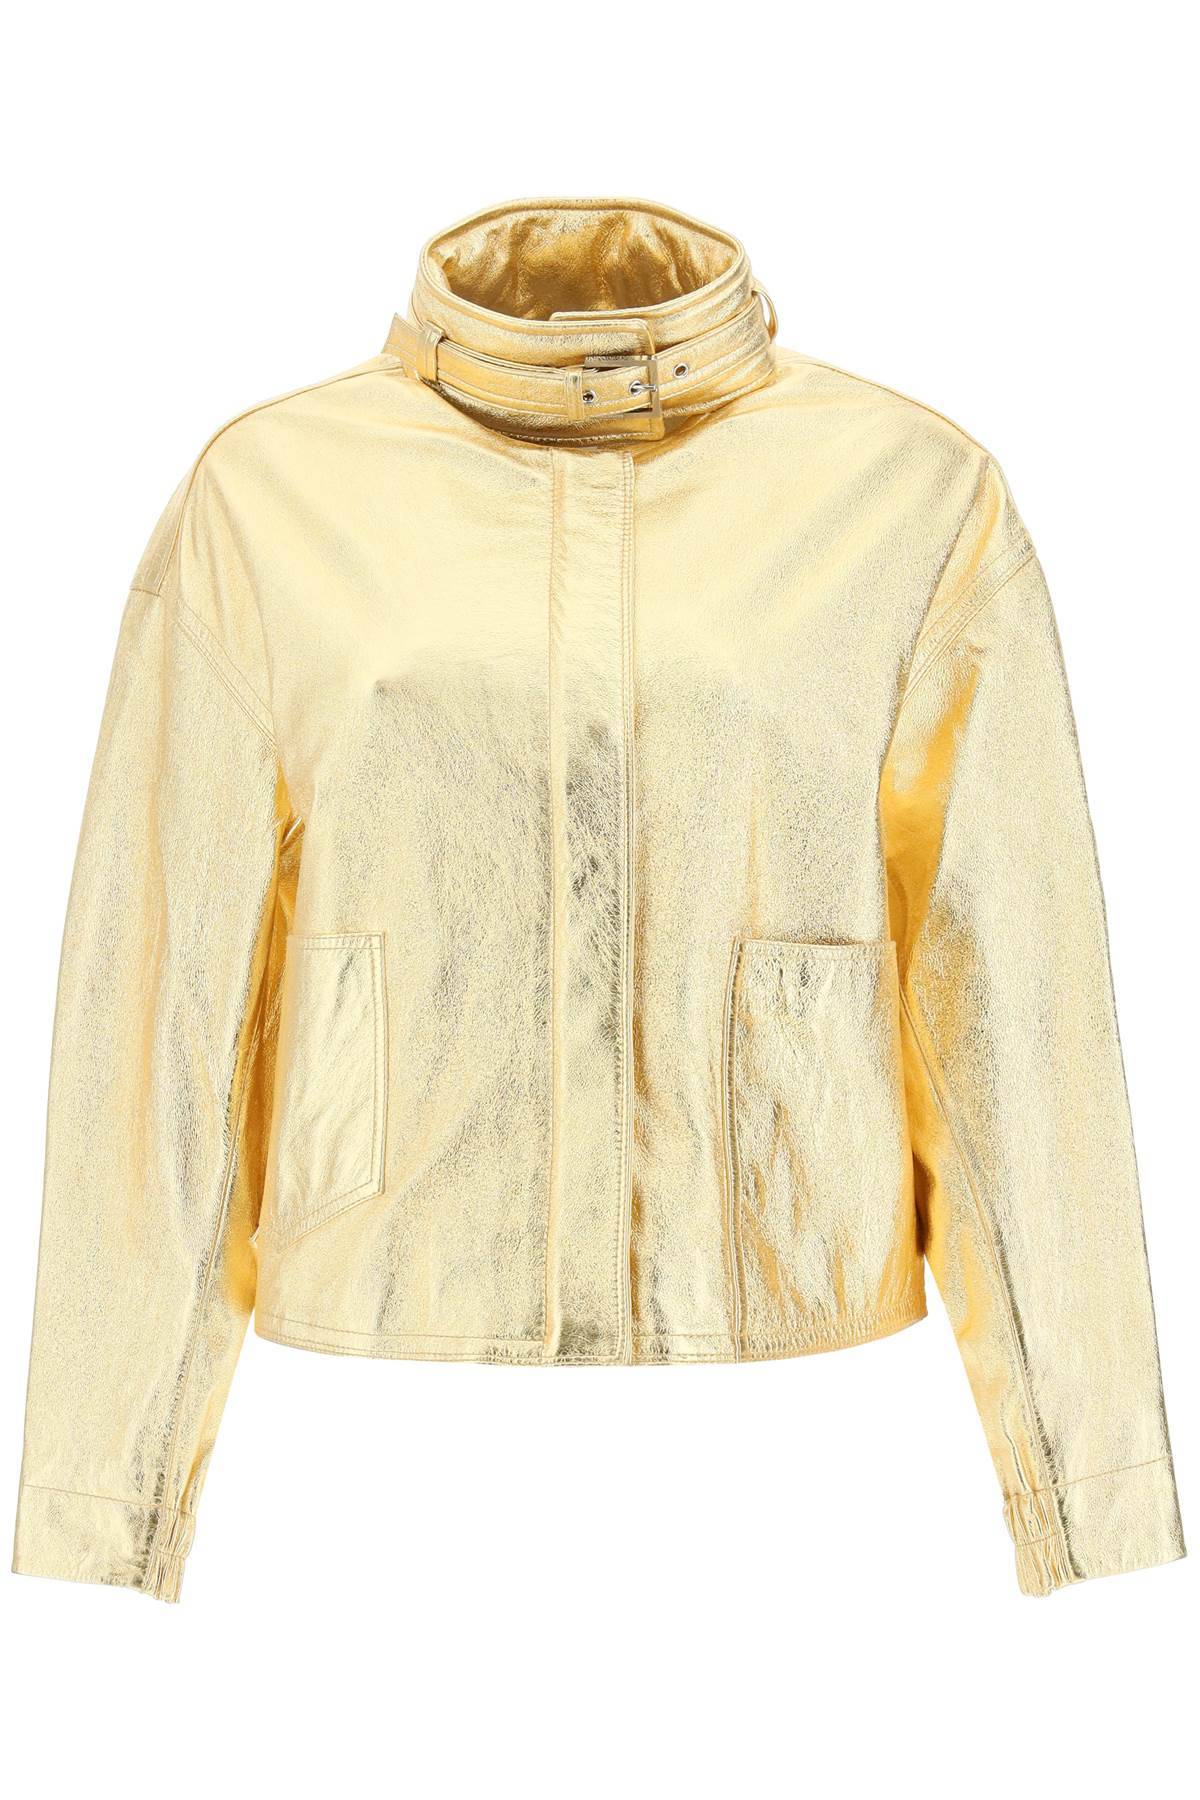 SAKS POTTS SAKS POTTS 'houston' gold-laminated leather bomber jacket